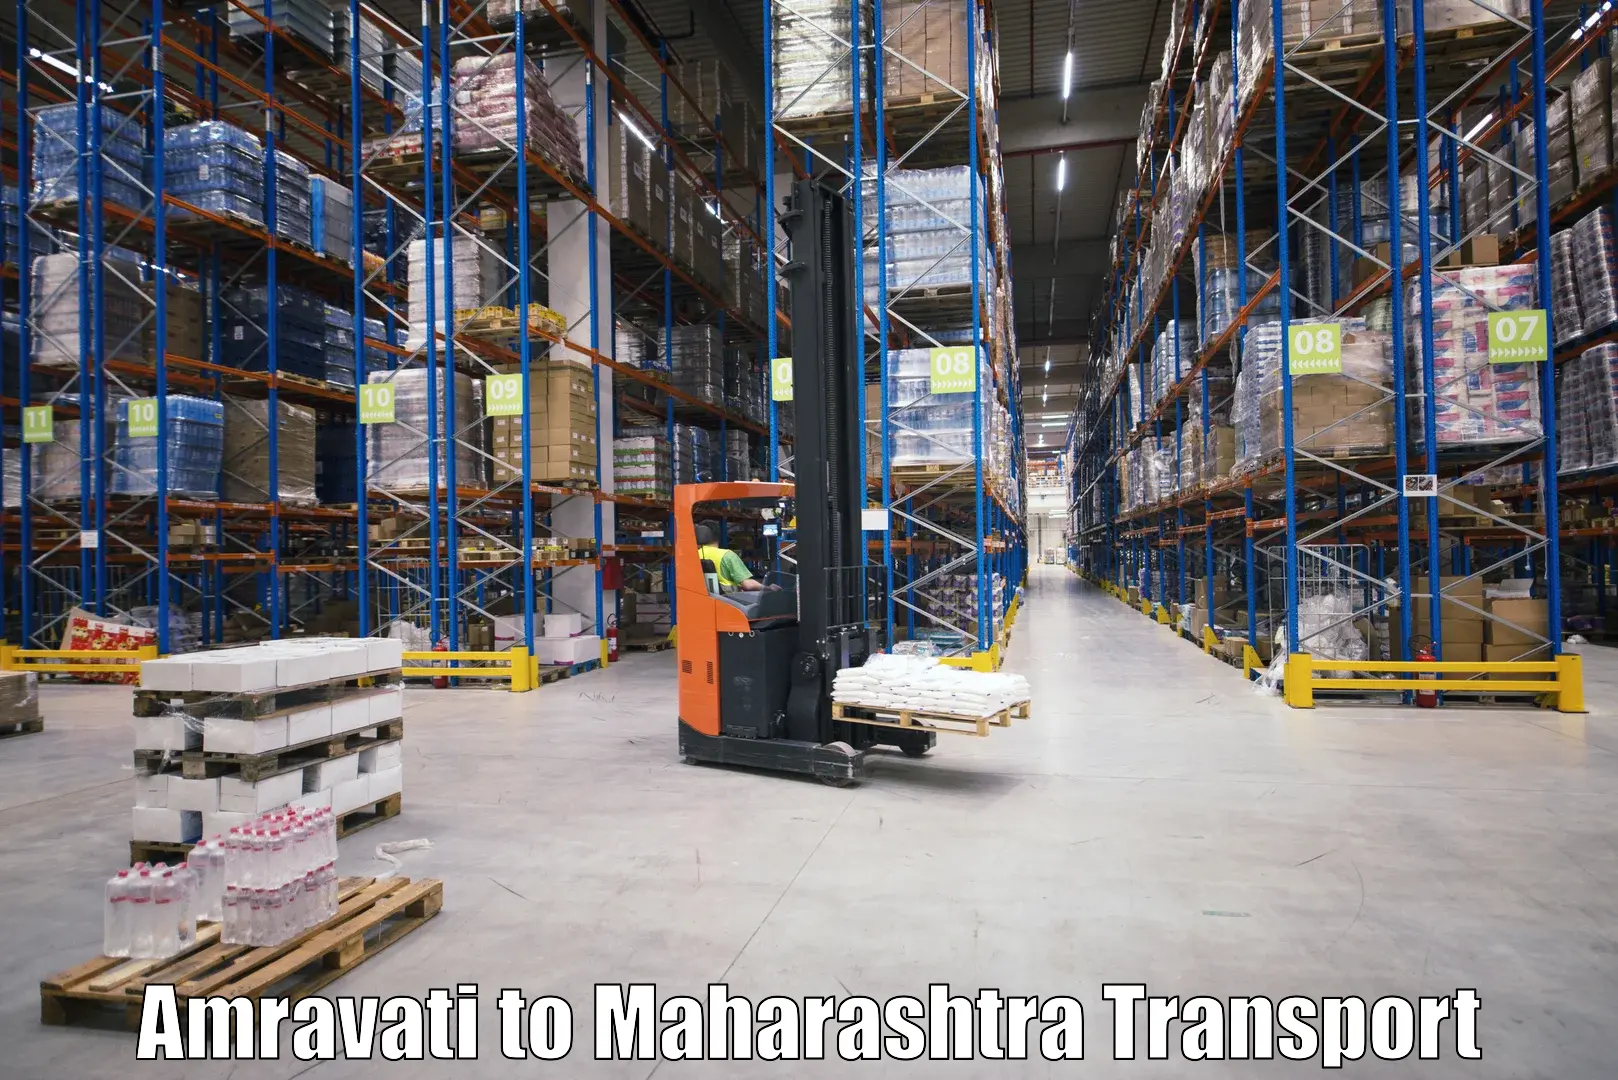 Furniture transport service Amravati to Amalner